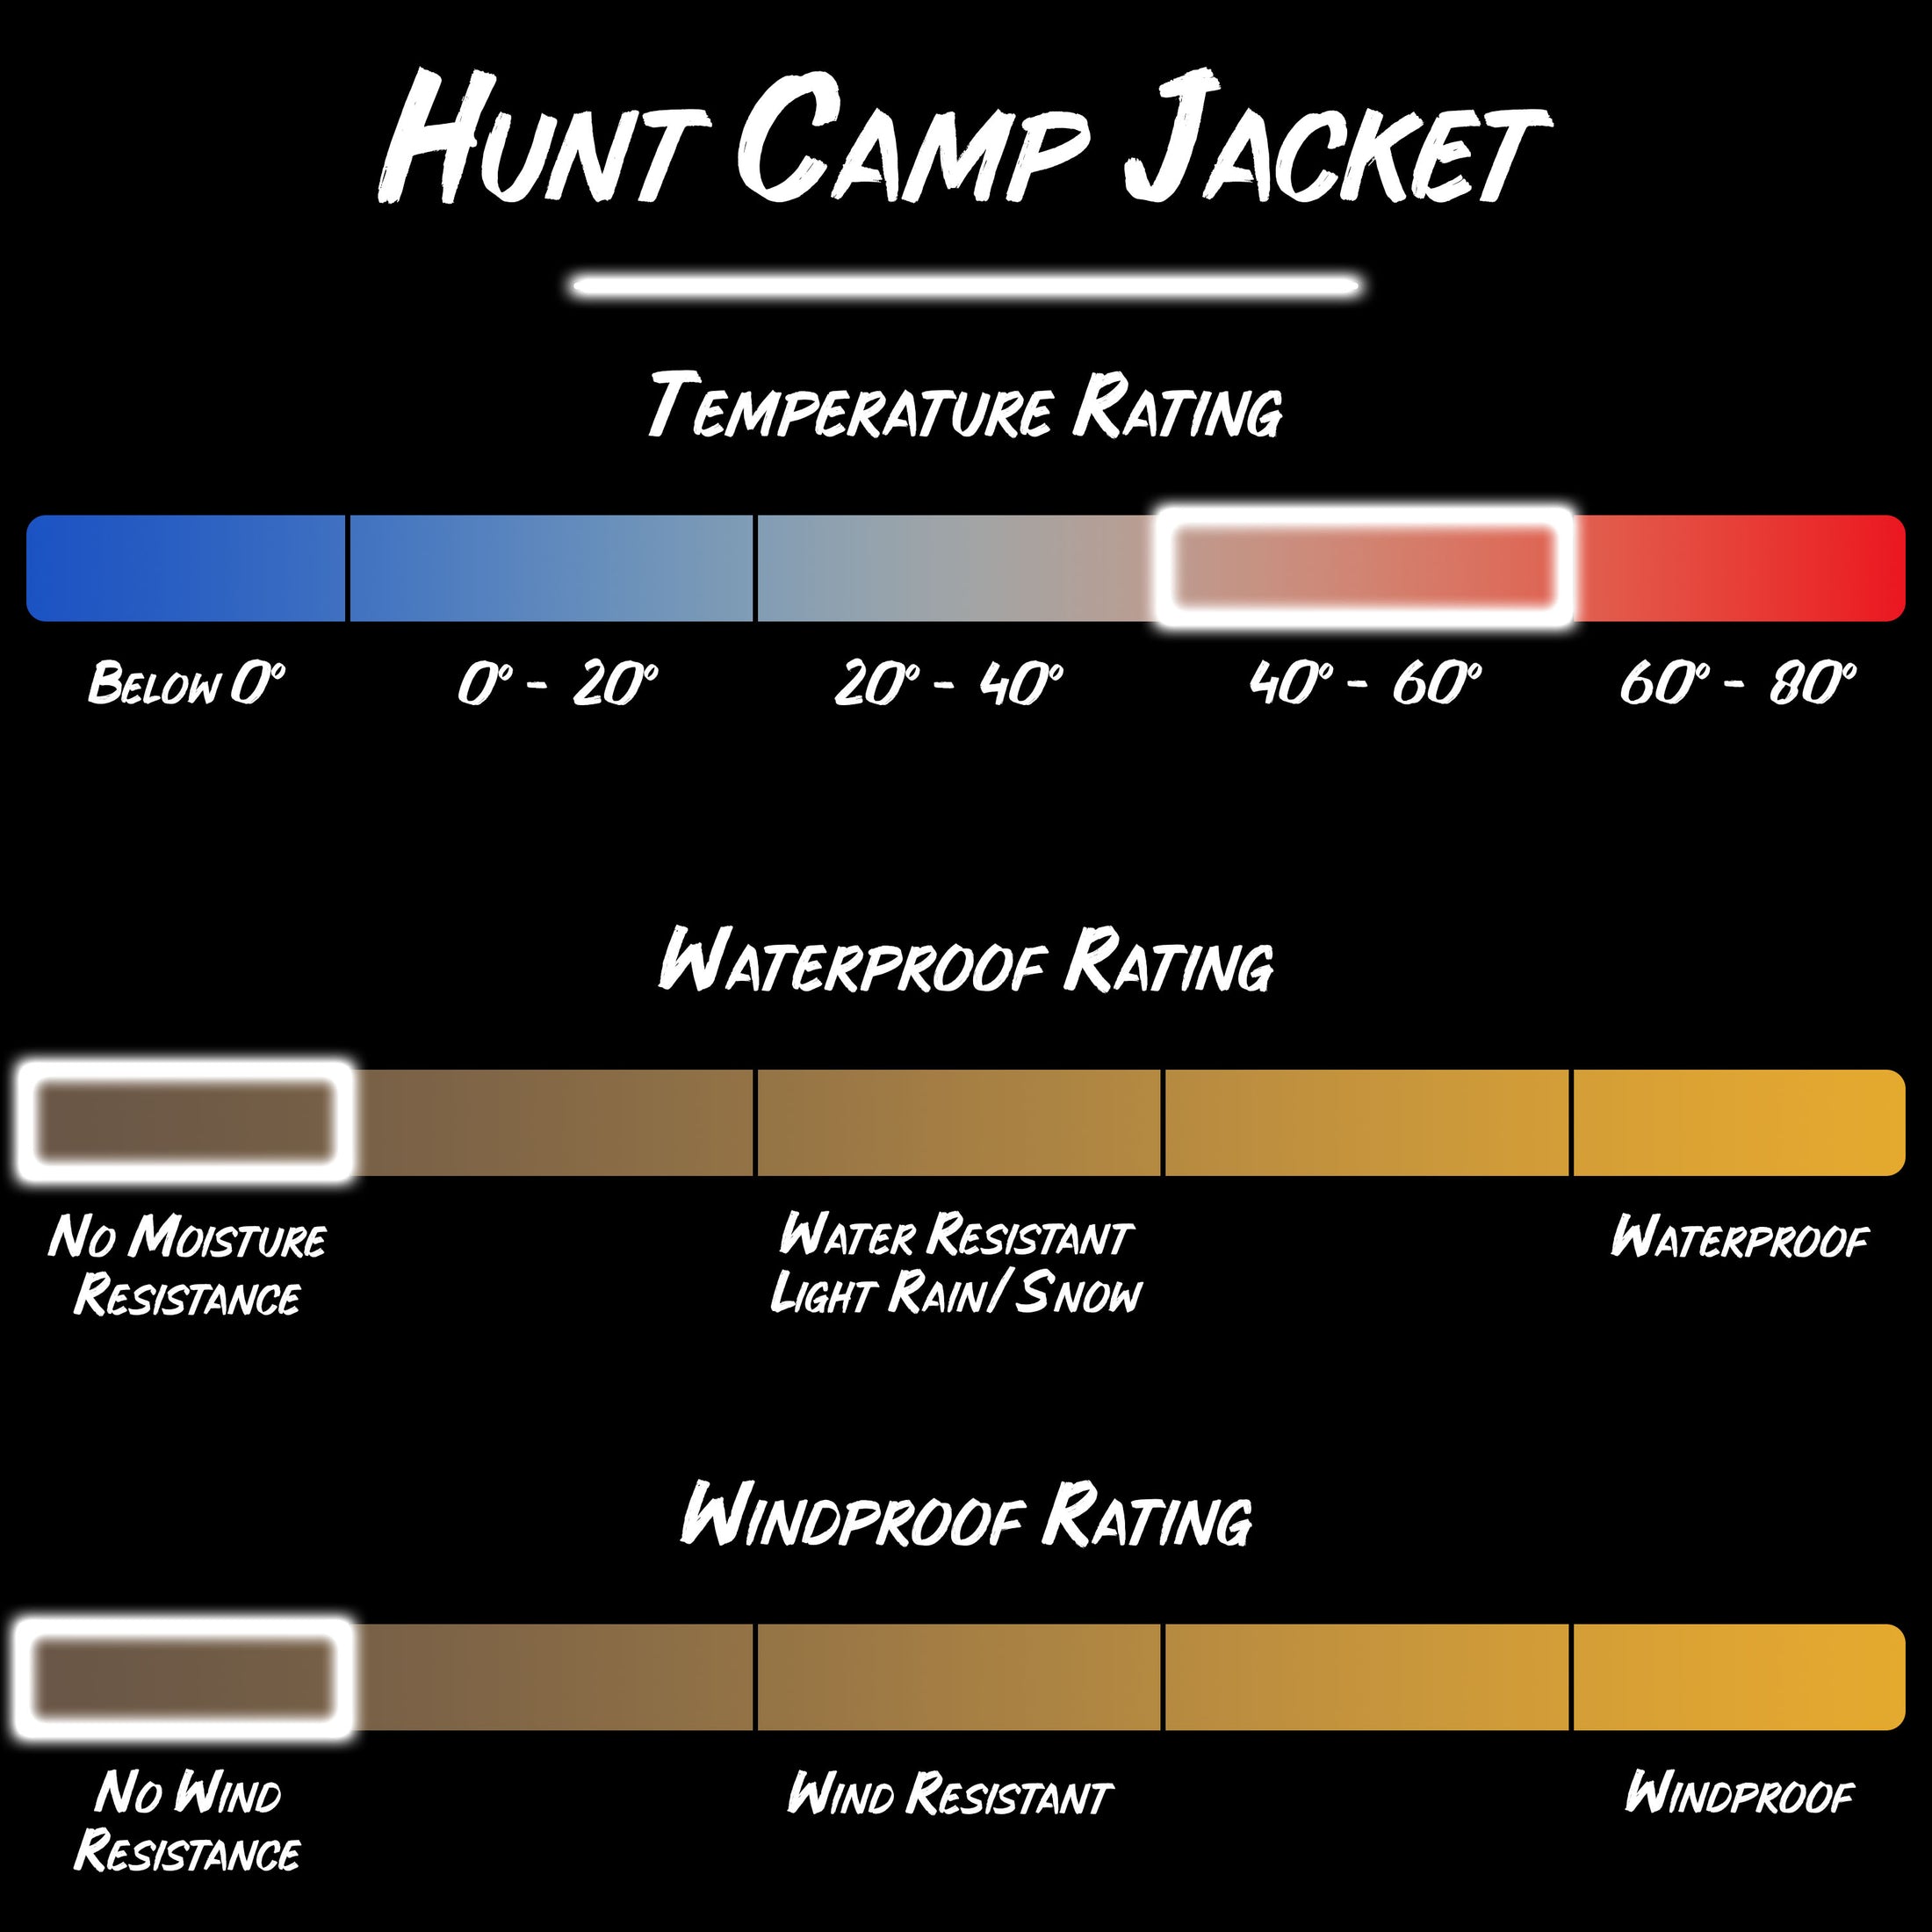 Gamehide hunt camp fleece jacket product specifications